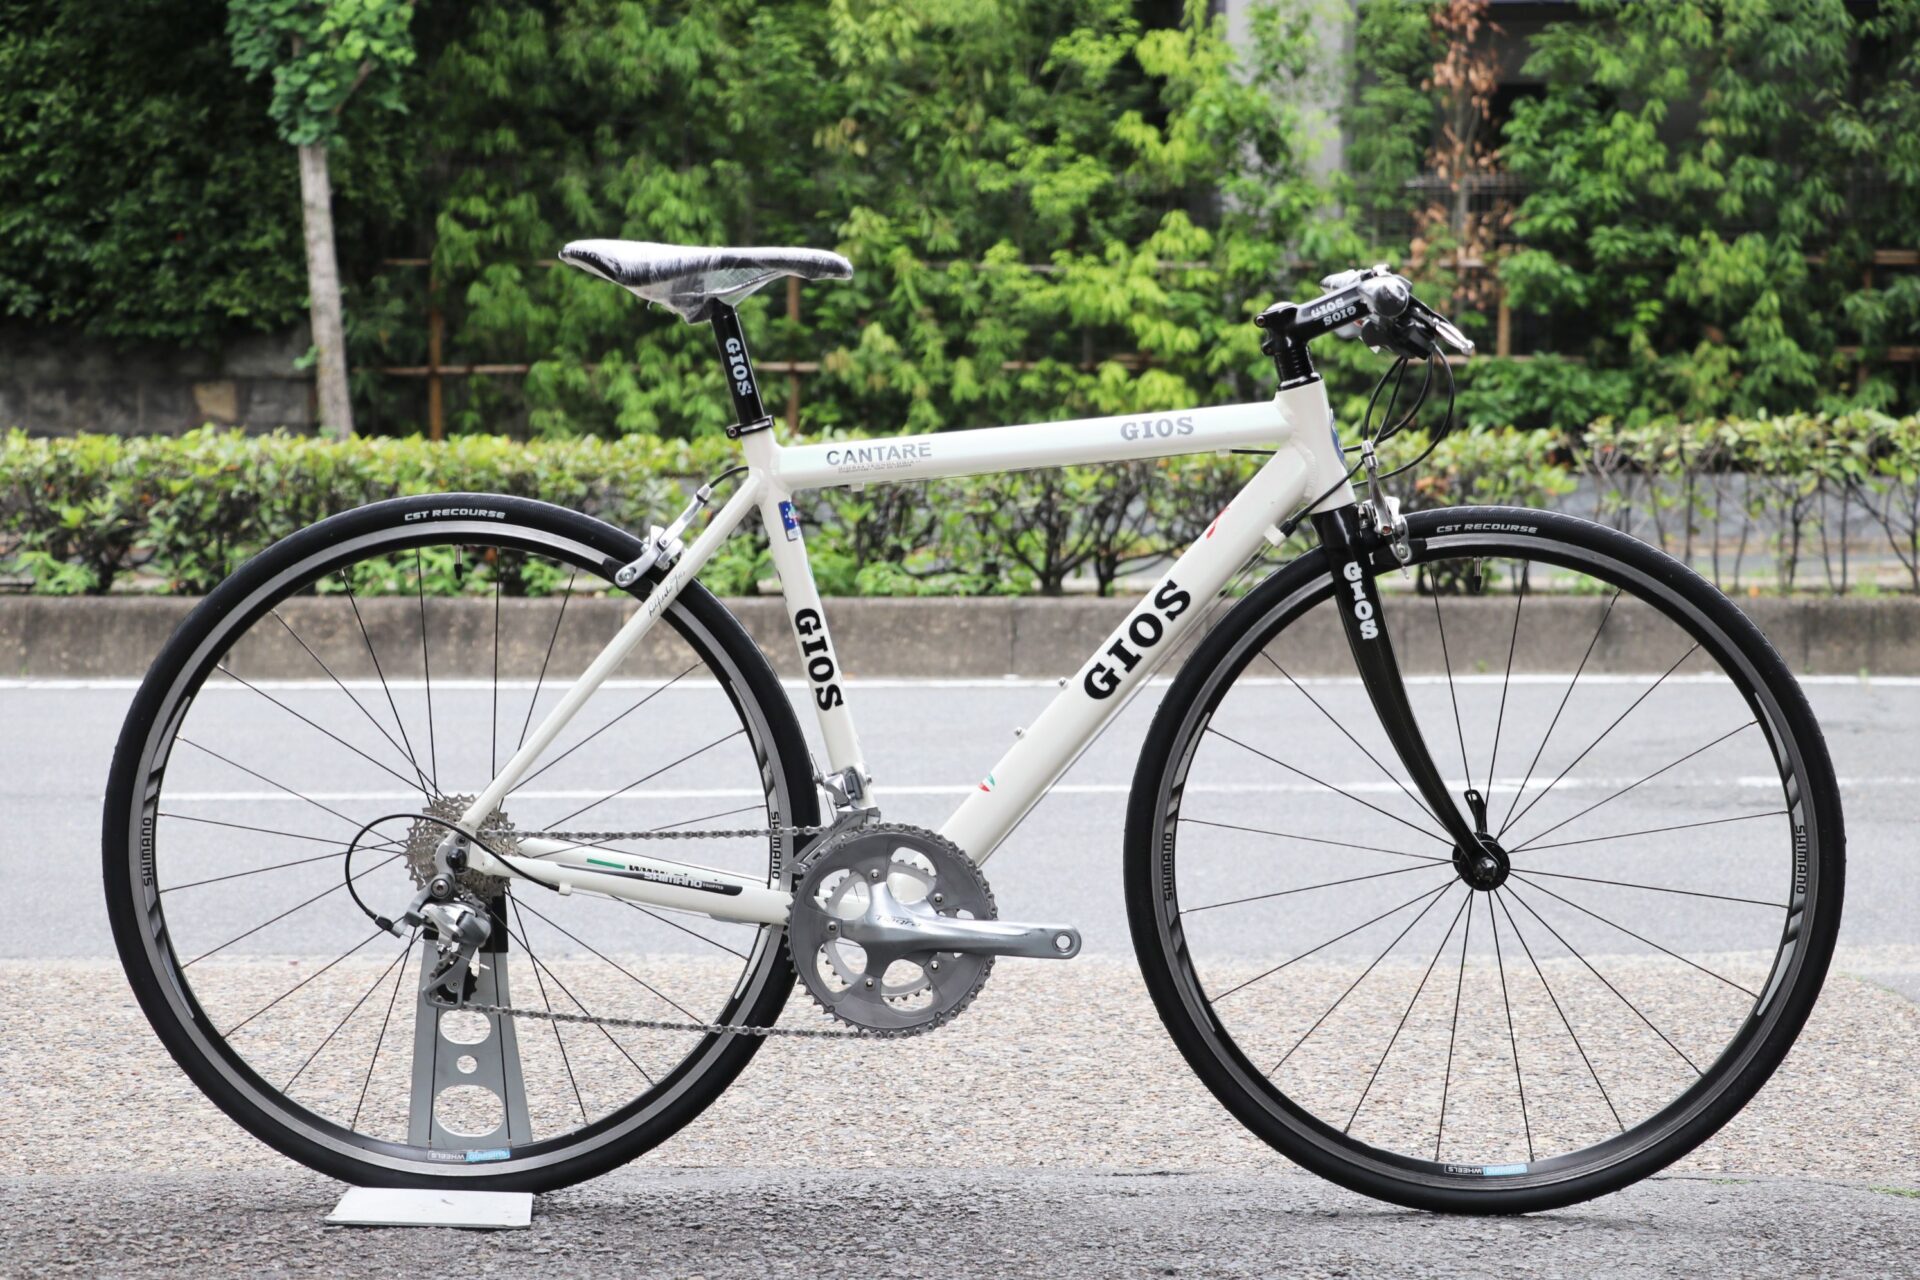 USED】GIOS / CANTARE ―クロスバイクみたいに使えるロード！ レアなTIAGRAカスタム済みのフラットバーロードが入荷！ | 京都の中古自転車・新車販売  サイクルショップ エイリン